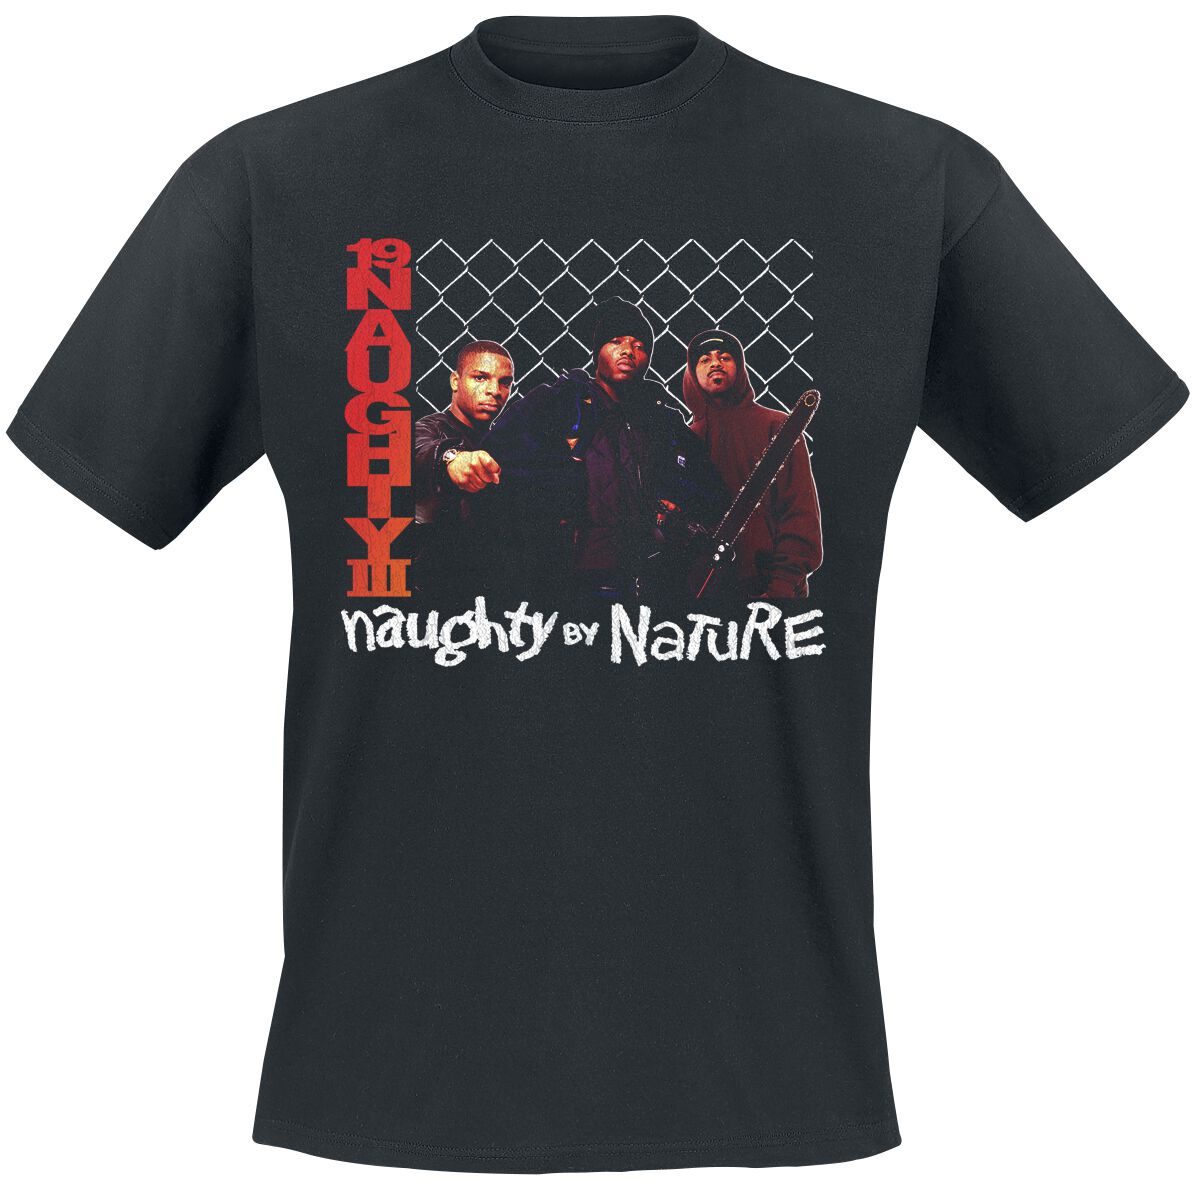 Naughty by Nature T-Shirt - 19 Naughty 111 - S bis 3XL - für Männer - Größe 3XL - schwarz  - Lizenziertes Merchandise!